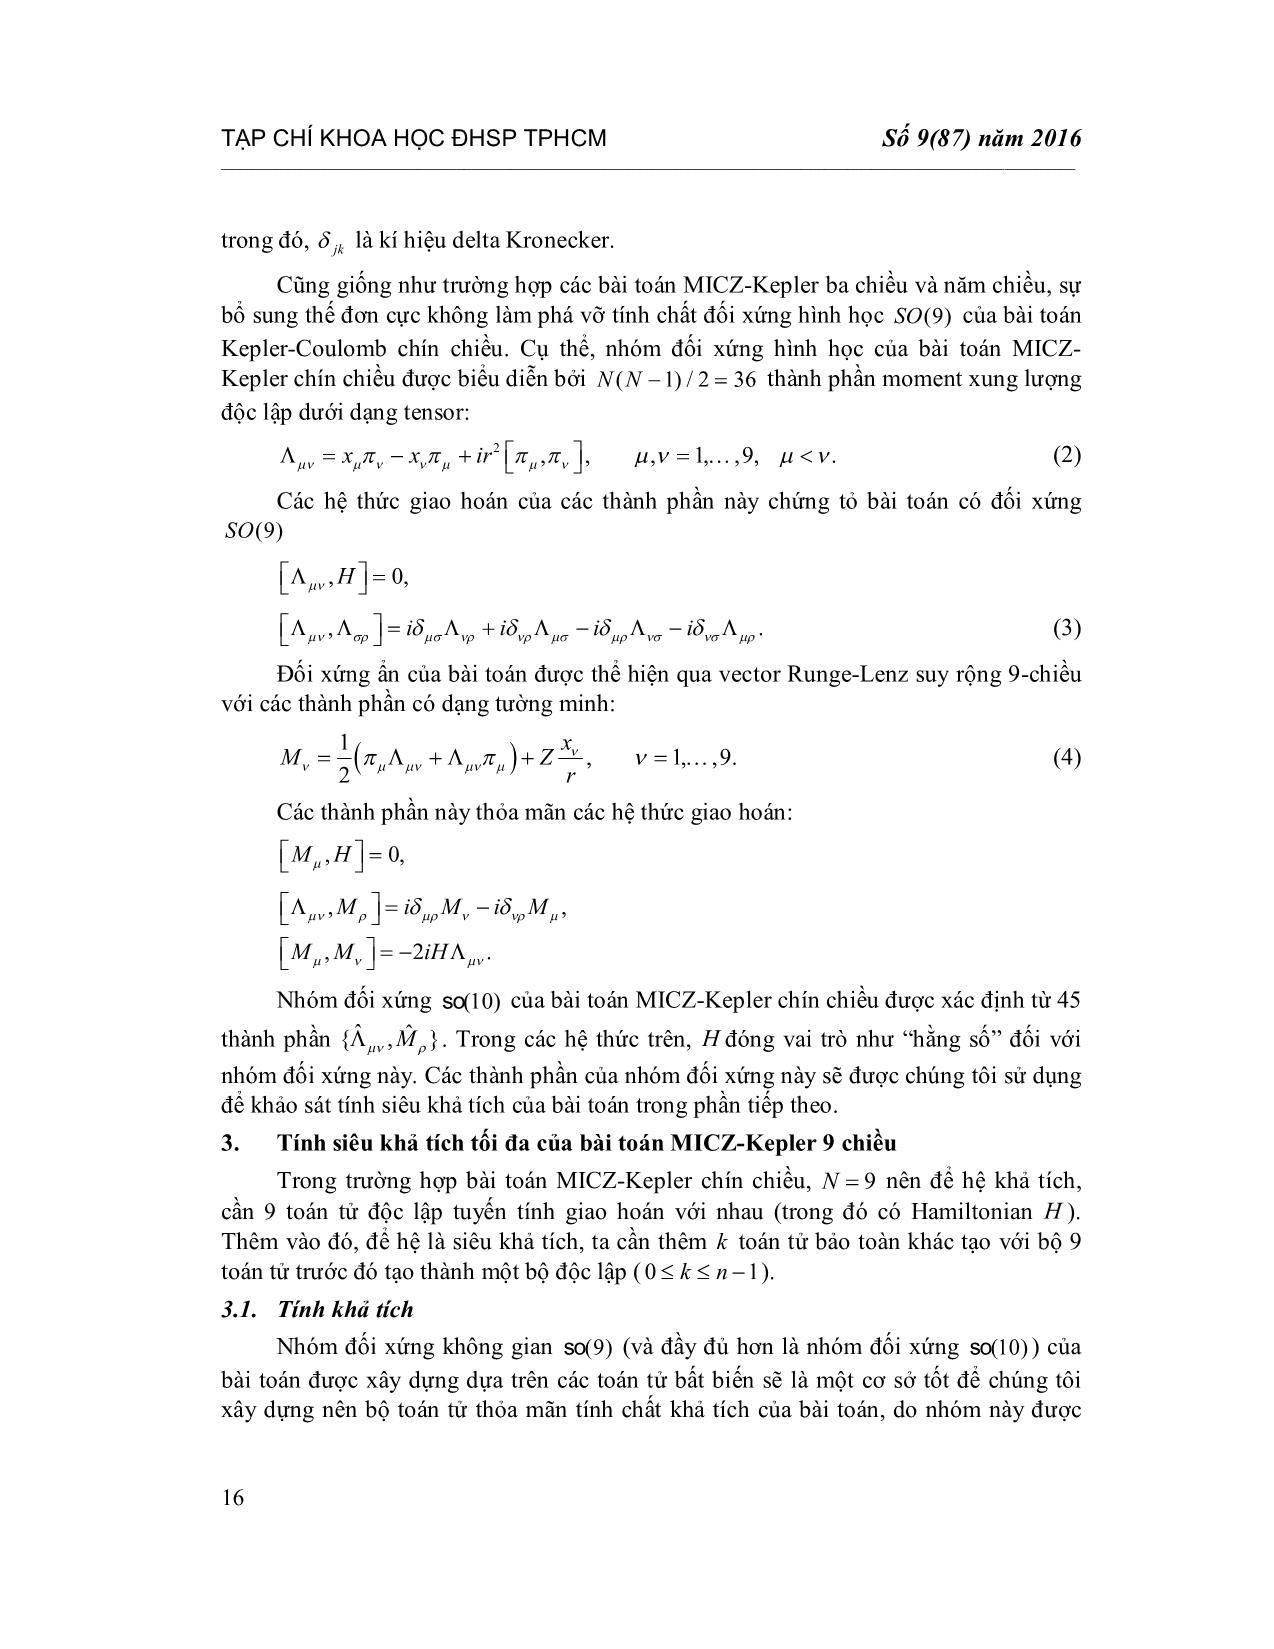 Tính siêu khả tích của bài toán Micz-Kepler chín chiều trang 4